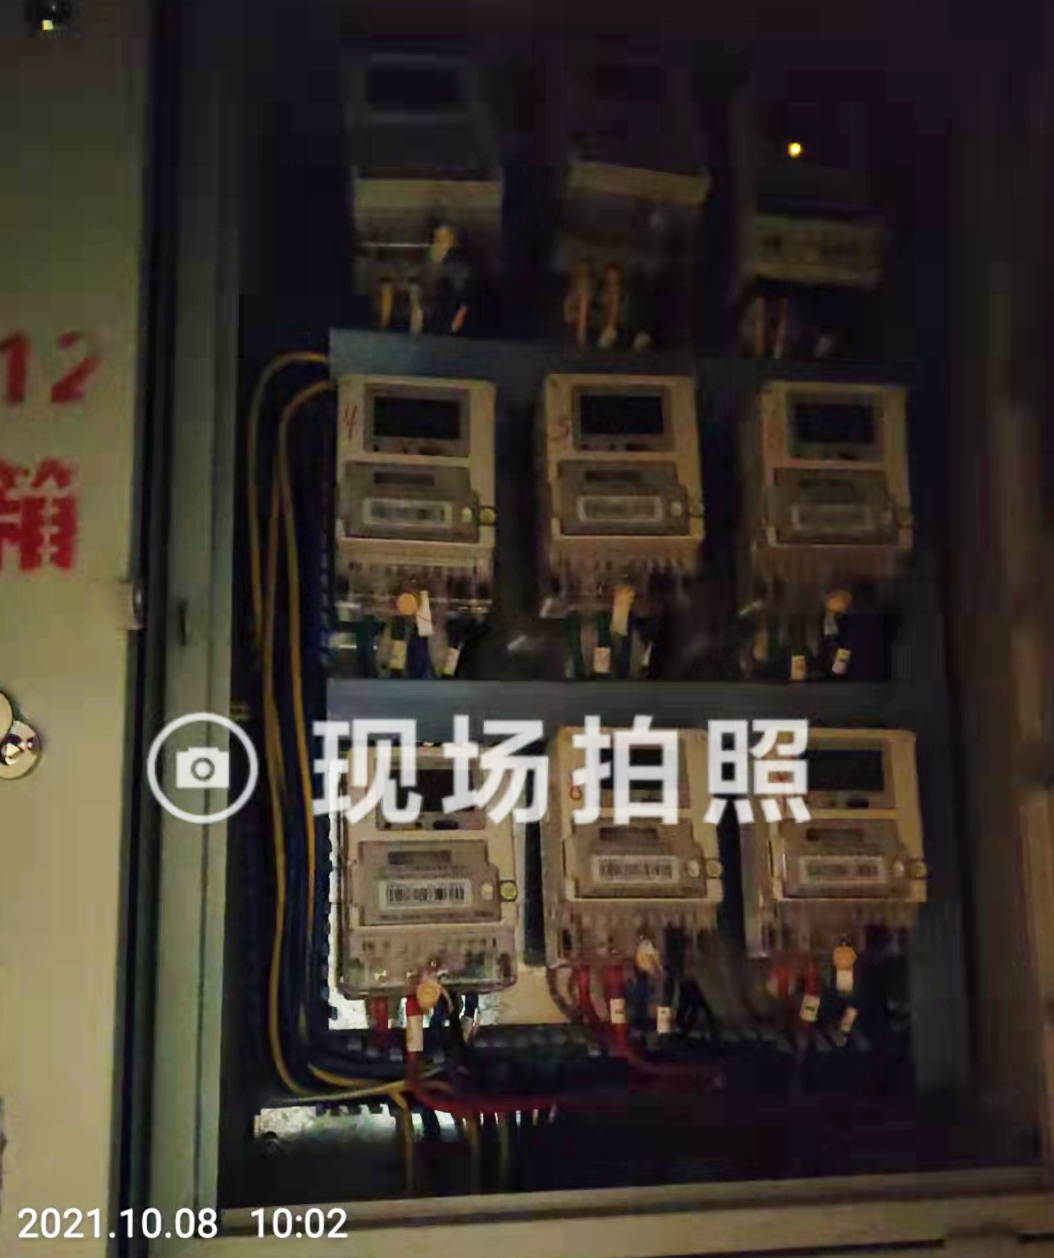 连云港一居民被控窃电被供电公司拉黑47天:他没有窃电 已经被起诉